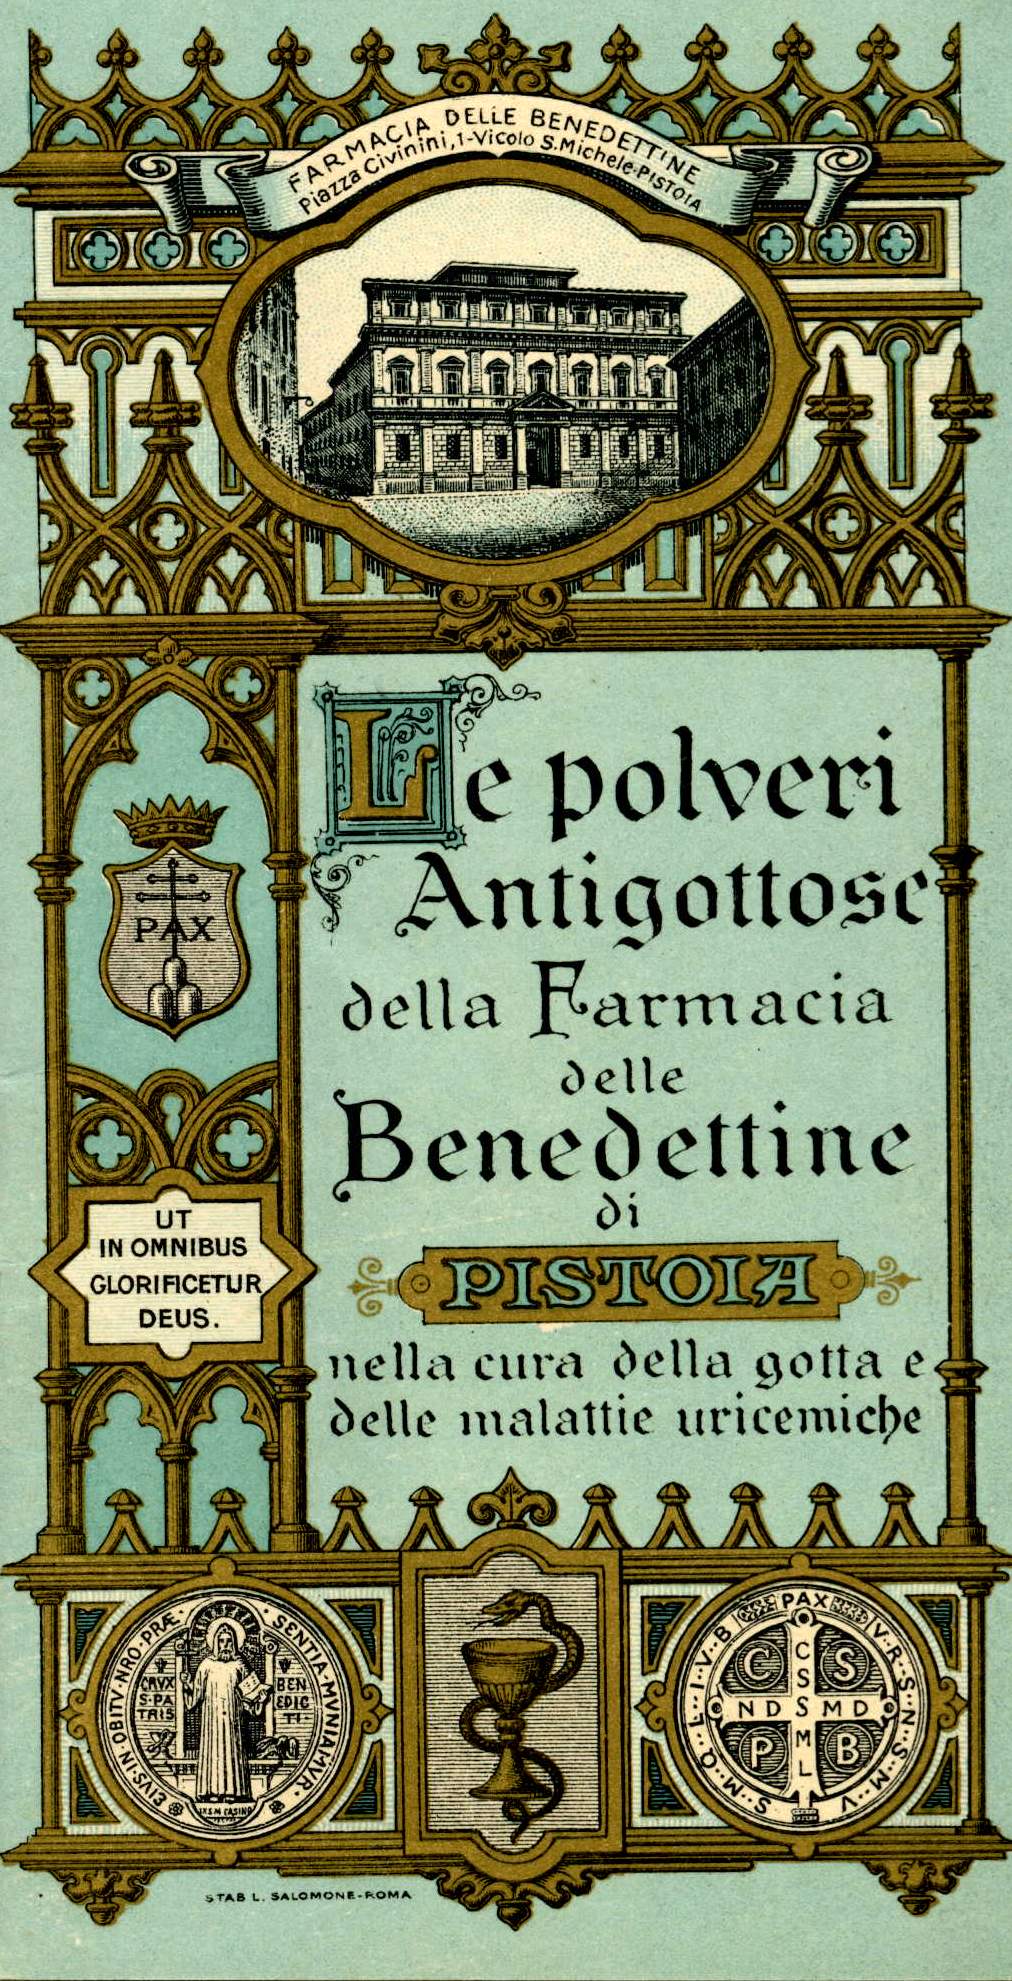 Antica Storica Spezieria del Monastero delle Monache Benedettine - Pistoia  